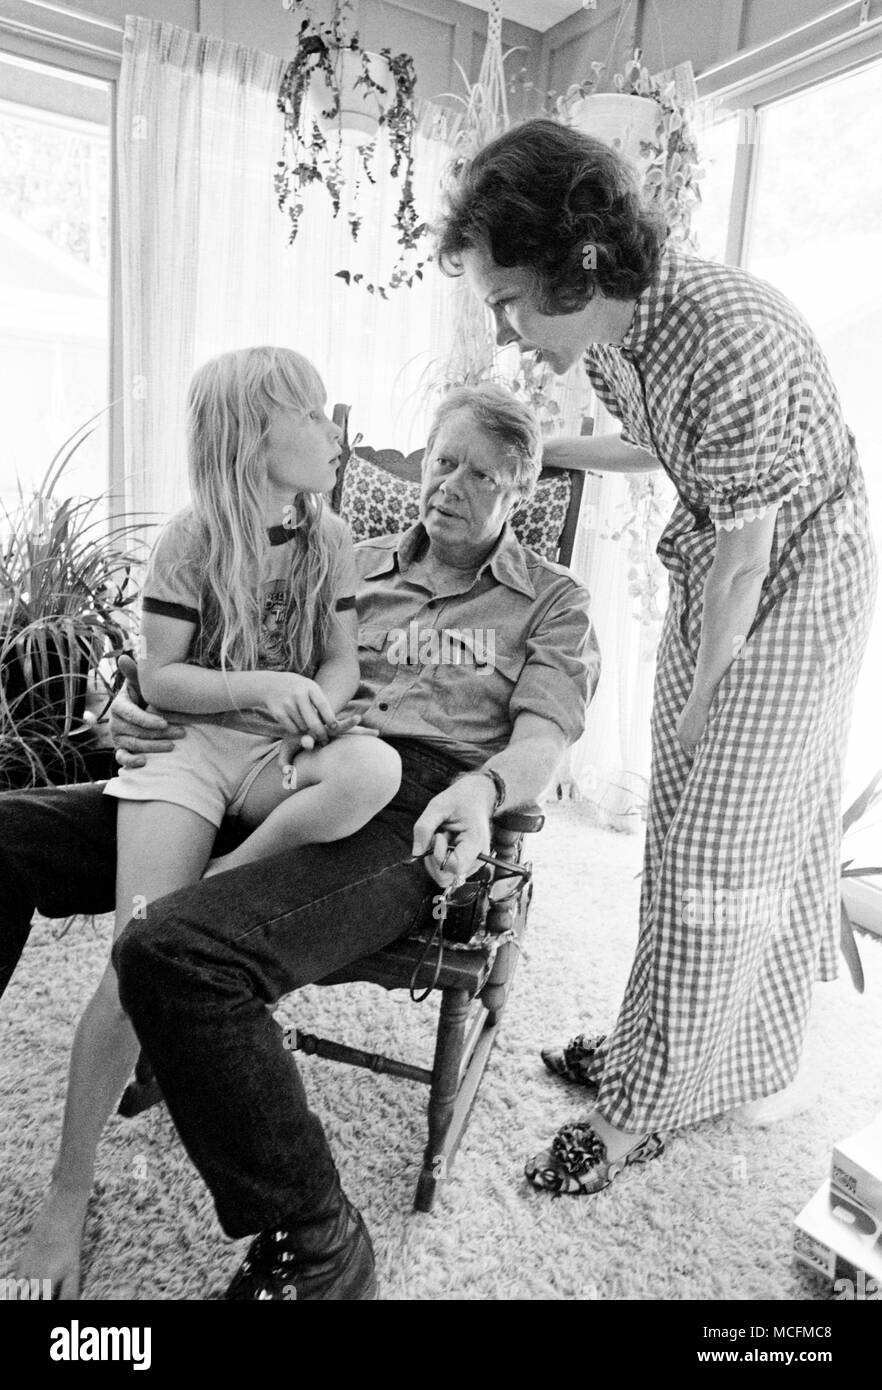 Mitten in einem Strudel von Interviews, Jimmy und Rosalynn Carter Tochter nehmen, Amy, für einen belehrbaren Moment auf Manieren. Stockfoto